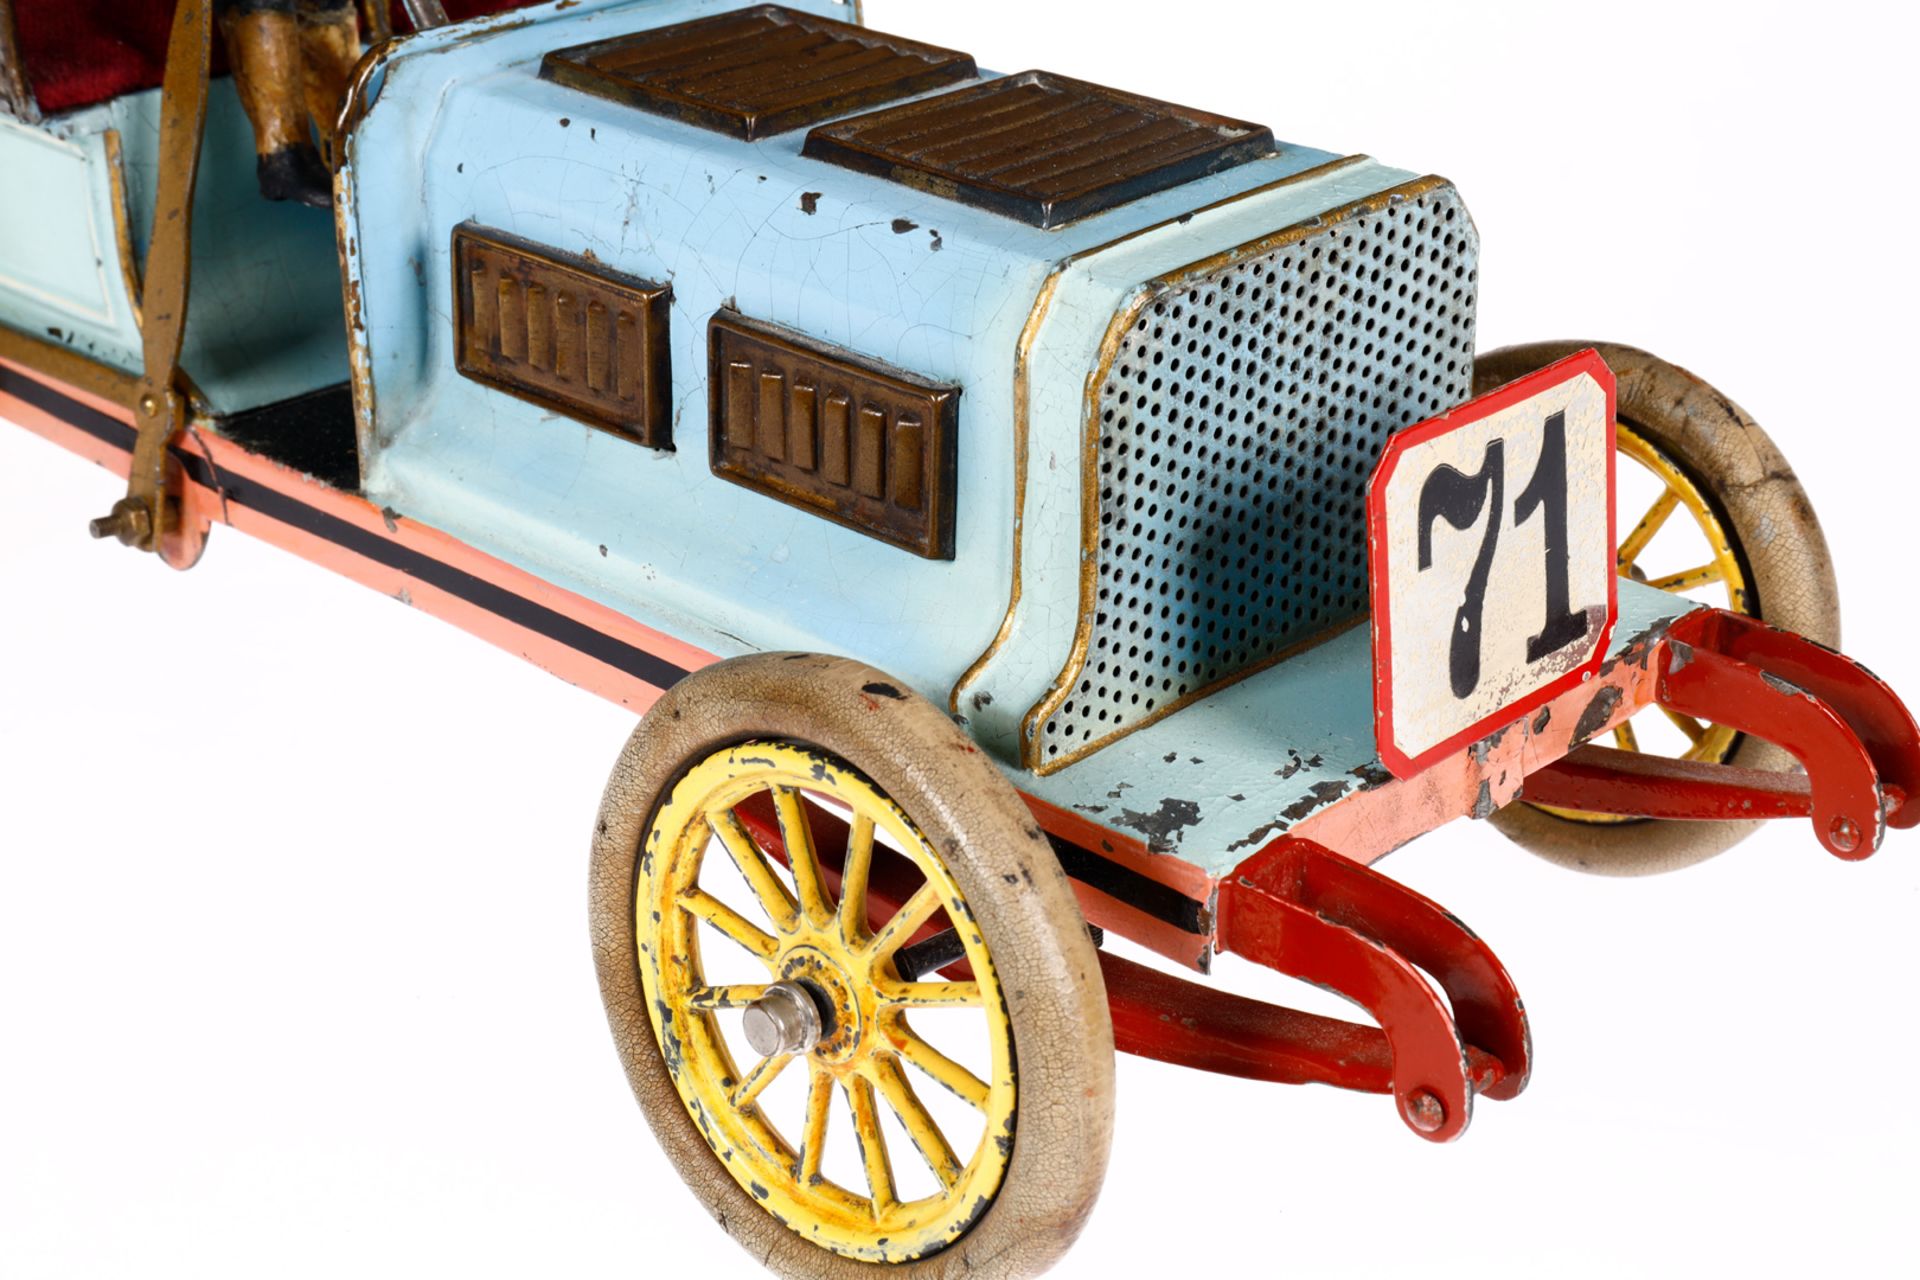 Bing Rennwagen Nr. 71, uralt, HL, mit Fahrerfigur, original gummibereift, Uhrwerk mit Bremse intakt, - Image 6 of 8